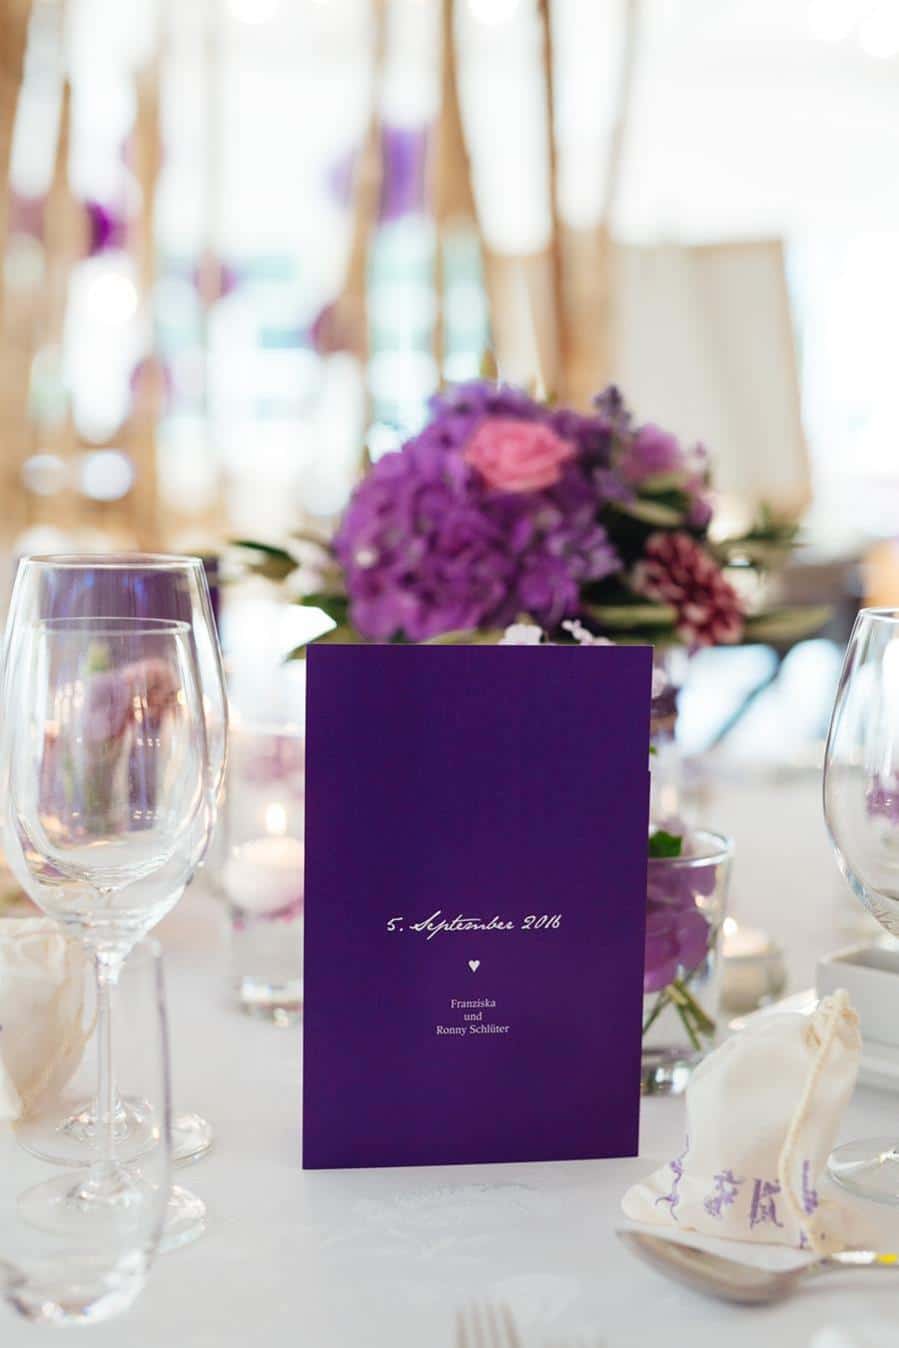 Pantone Farbe des Jahres 2018: Inspiration für eine echte Hochzeit in Ultra Violett.